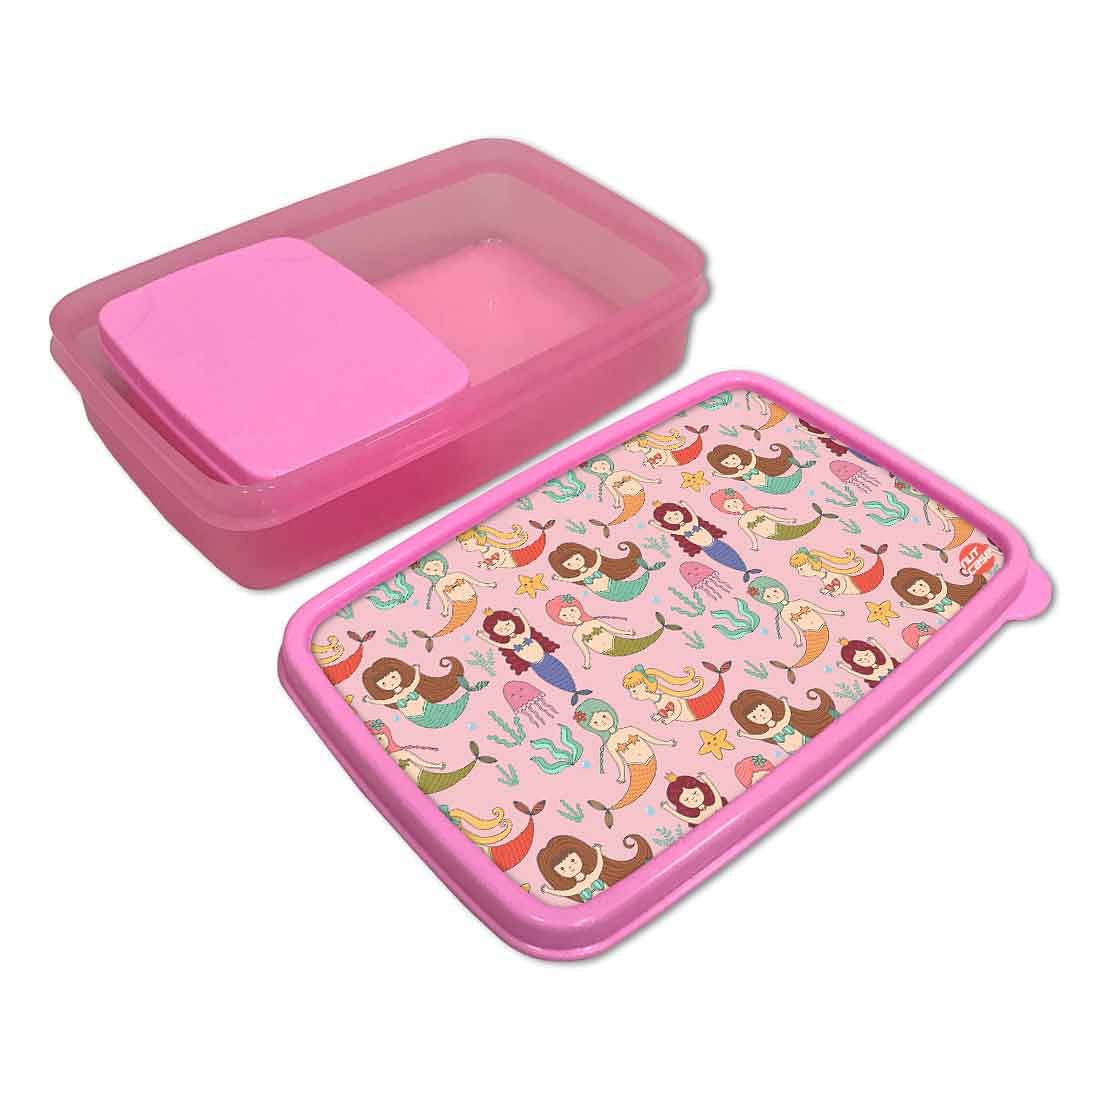 School Lunch Organizer Box for Girls Return Gifts Birthday Party - Mermaid Nutcase